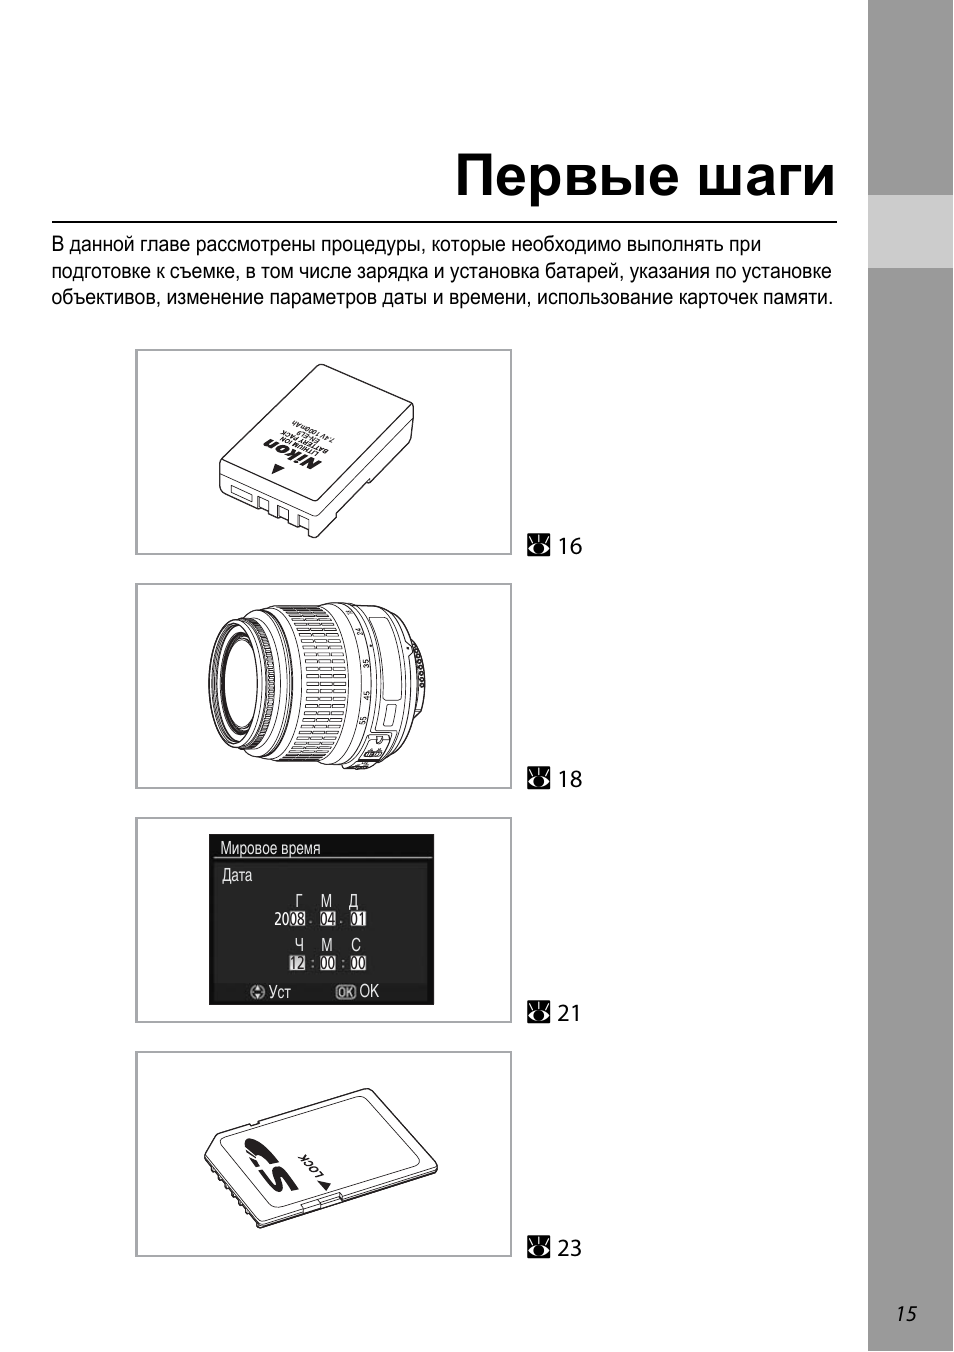 Первые шаги | Инструкция по эксплуатации Nikon D60 | Страница 27 / 204